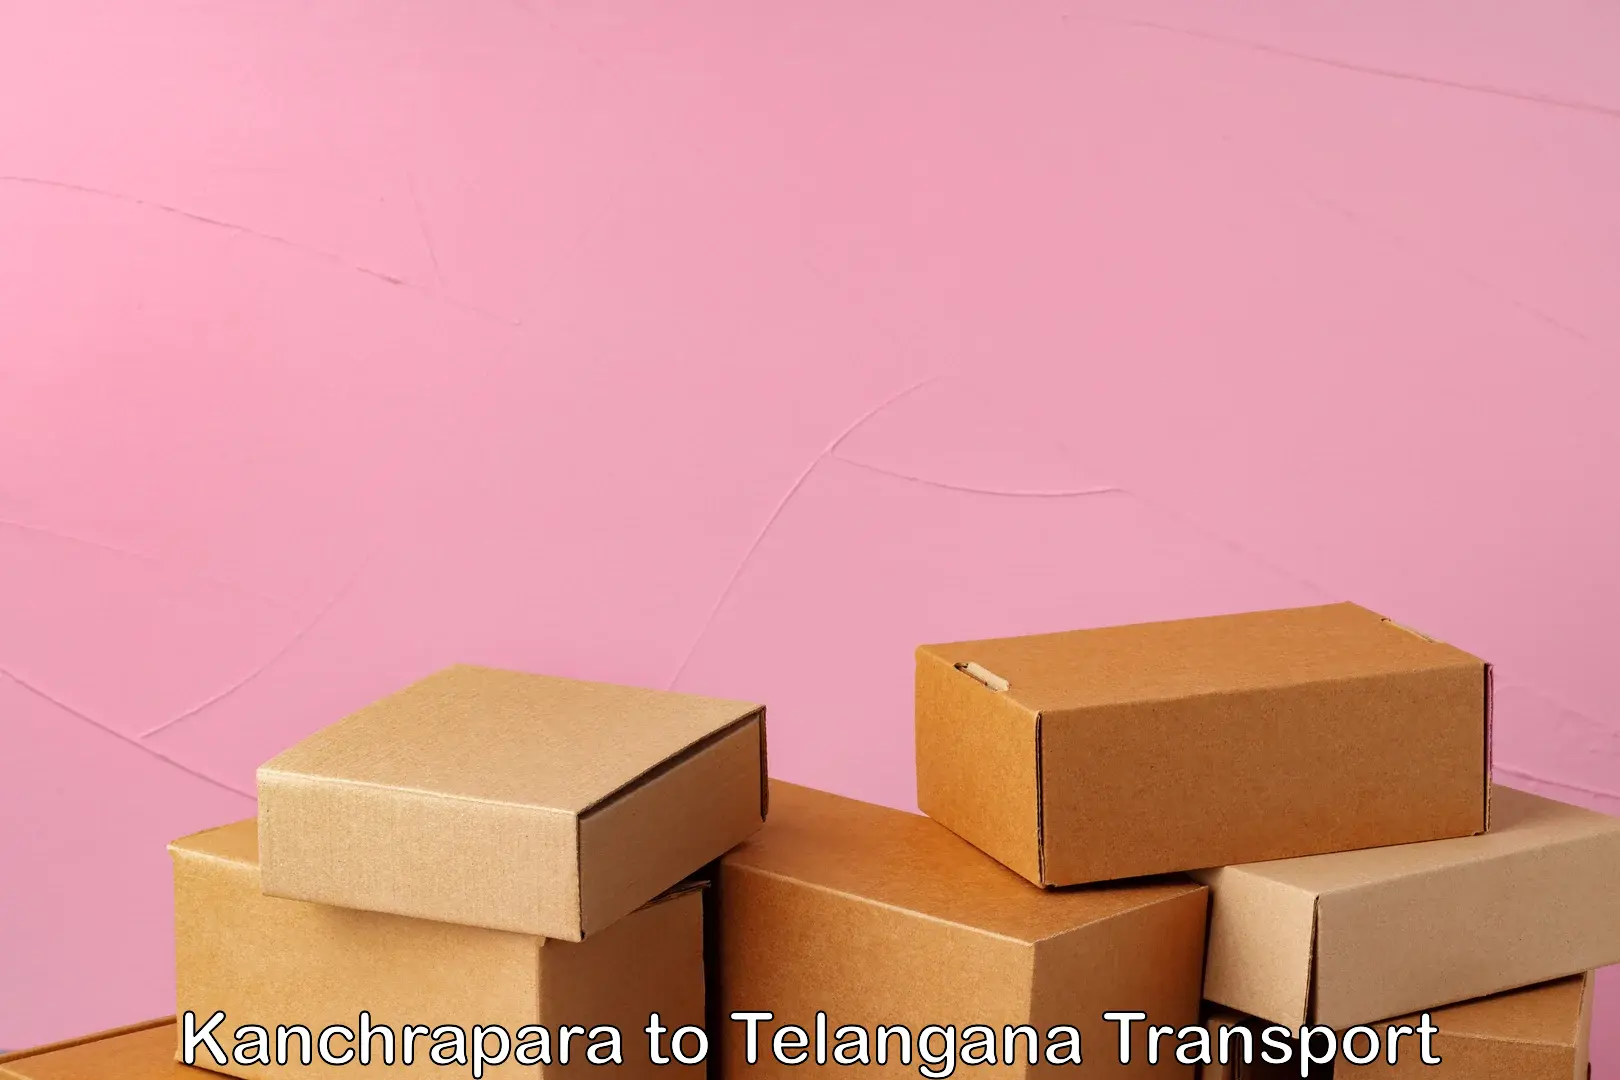 Lorry transport service Kanchrapara to Telangana